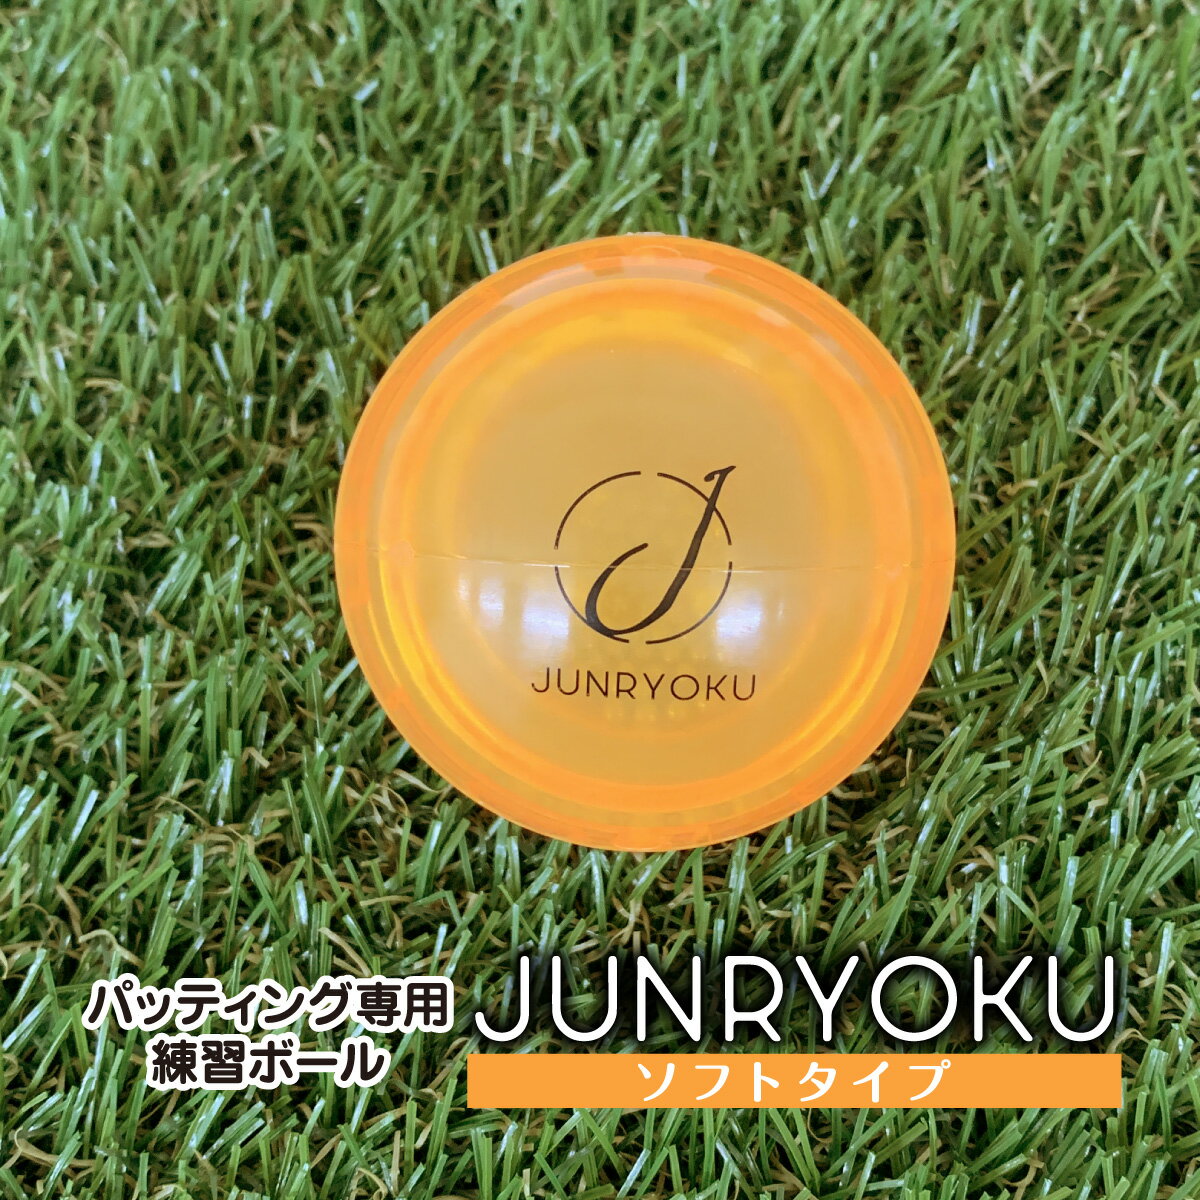 音とラインで、正しいパッティング感覚を身につける！ パッティング専用練習ボール『JUNRYOKU』は、日本体育大学ゴルフ研究室、木原祐二氏が監修した、パッティング専用のゴルフ練習用ボールです。真ん中に白線の入った樹脂製ボールの中にステンレスの球が入っており、動くとシャカシャカ音が鳴ります。 正しいパッティングができた時はカップまでボールの白線は真っ直ぐの軌跡を描き、中の球の音も一定の音で鳴ります。逆に芯で捉えないパッティングをすると白線はぐにゃぐにゃ曲がり、中の球が波打ち大きく移動し効率の良い回転力が失われます。 球が一定の音で鳴り、ボールの中央ラインがカップに向かって真っ直ぐになるよう、何度もチャレンジしてください。 【JUNRYOKUの使用方法】 1.ボールを置く前に2、3度振り、中の小さな球が偏らないようほぼ同数で左右に分けてください。 2.ボール中央の白線をターゲット（カップ）に対し真っ直ぐになるようセット。距離は約1.5m ~2.5mで練習してください。 3.パターの芯でボール中央の白線を捉え、白線が真っ直ぐ順回転で進むようにパッティングしましょう。 【真っ直ぐきれいなパッティングのコツ】 ・ボールの赤道(中心)を打ち抜くイメージで！ ・ボール上部を擦り上げて打たないようにしましょう。逆に、打ち込み(ダウンブロー)過ぎにも注意！効率的な回転力が伝わりません。 ・インパクト前で加速させたり、減速させたりすると芯を捉えづらくなり、距離感も得られません。中の小さな球が波打つ要因になります。 インパクトまでのスピートを一定に保ち、正しいストロークでパッティングできるように繰り返し練習しましょう。 商品名：ゴルフ練習ボール JUNRYOKU（ジュンリョク） ソフトタイプ オレンジ 材質：本体／アイオノマー樹脂、内容物／ステンレス鋼 重量：68~73g 【使用の際の注意点】 ＊パター使用限定ボールのため、5m以上を打つ練習はお控えいただき、パッティング練習の目的のみで使用してください。 ＊耐久テストは充分に行っておりますが、こちらの商品は中が空洞になっており、温度変化と激しい打撃に弱くなっております。温度変化と激しい打撃に特にご注意ください。 ＊同じ箇所を集中して打撃すると消耗が早くなるおそれがあります。 ＊打った時に異常音がしたり、ボールにヒビ欠けがある場合は使用を中止してください。 ＊破損のおそれがありますので、-5°C以下での使用はお控えください。 ＊変形のおそれがありますので、50°C以上になる場所に放置しないでください。 ＊使用後は汚れをよく拭き取り、直射日光を避けて保管してください。